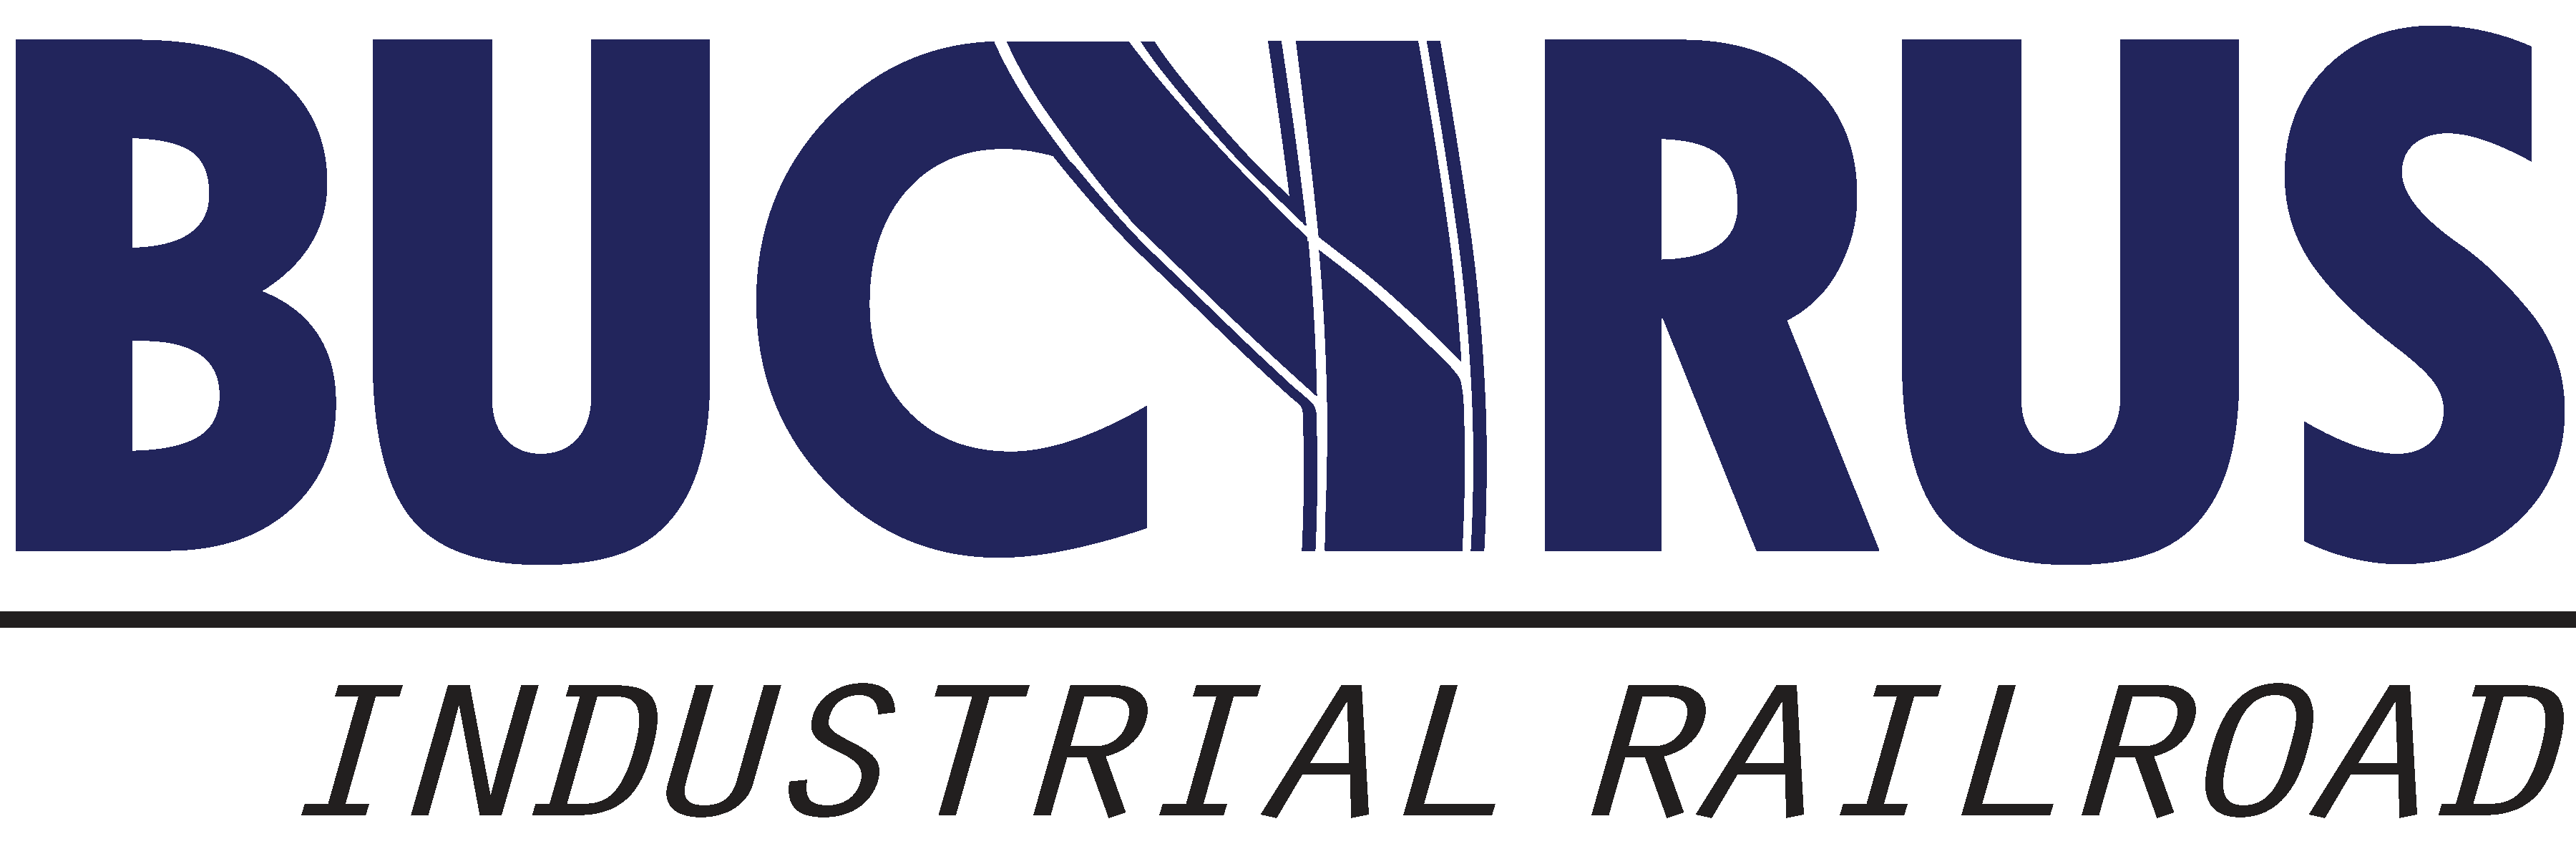 Bucyrus Industrial Railroad logo